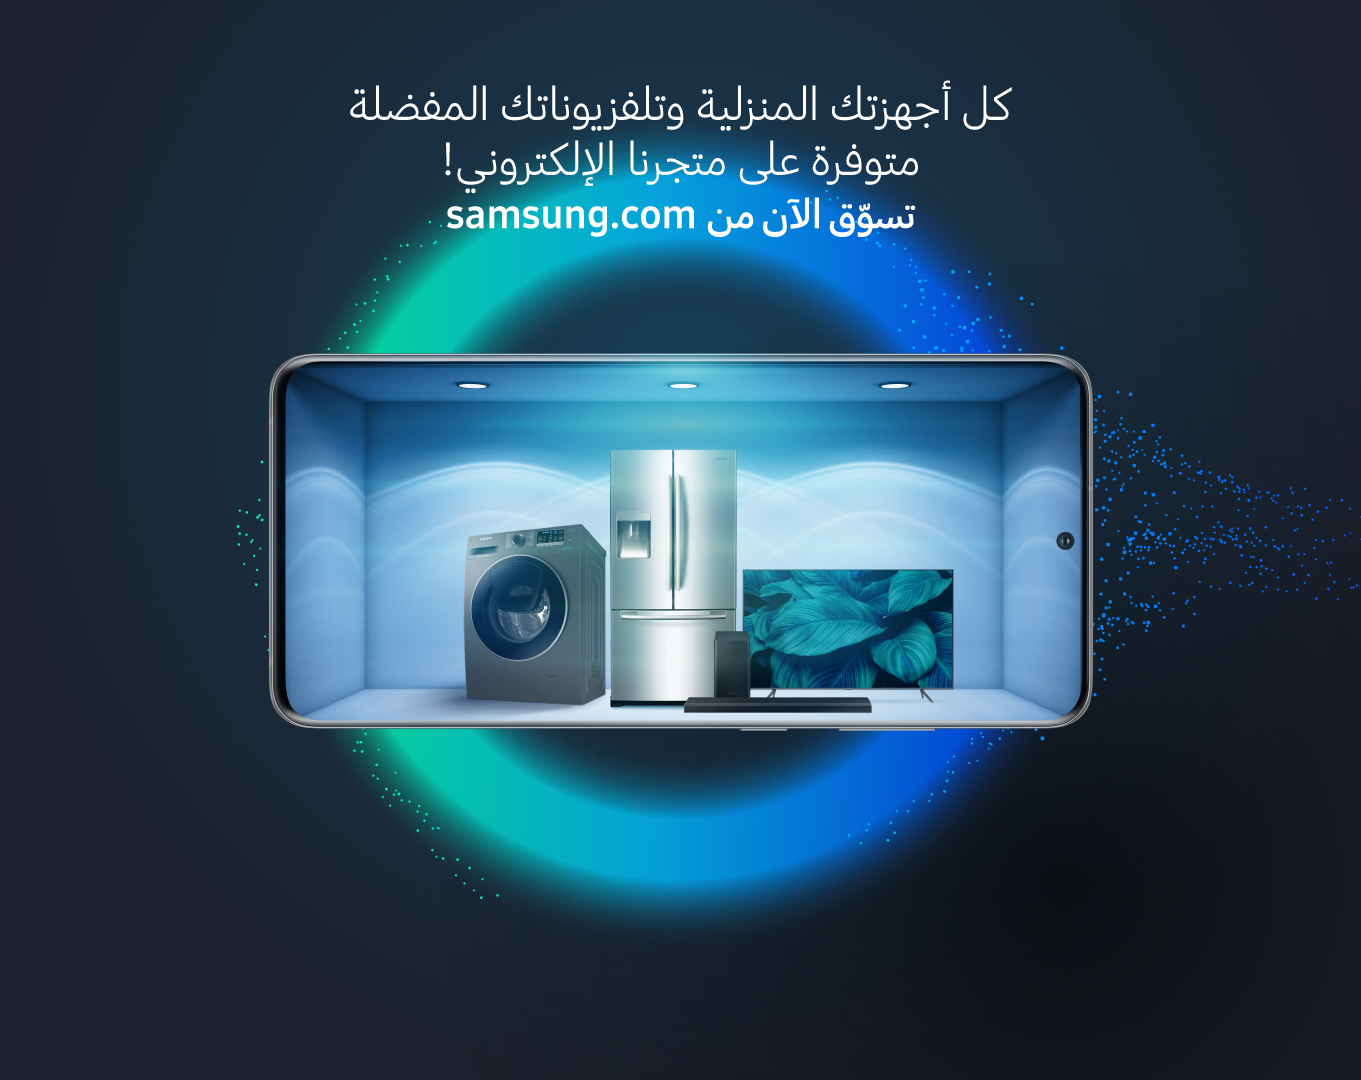 "سامسونج إلكترونيكس المشرق العربي" تضم الأجهزة المنزلية الرقمية في متجرها الإلكتروني E-Store